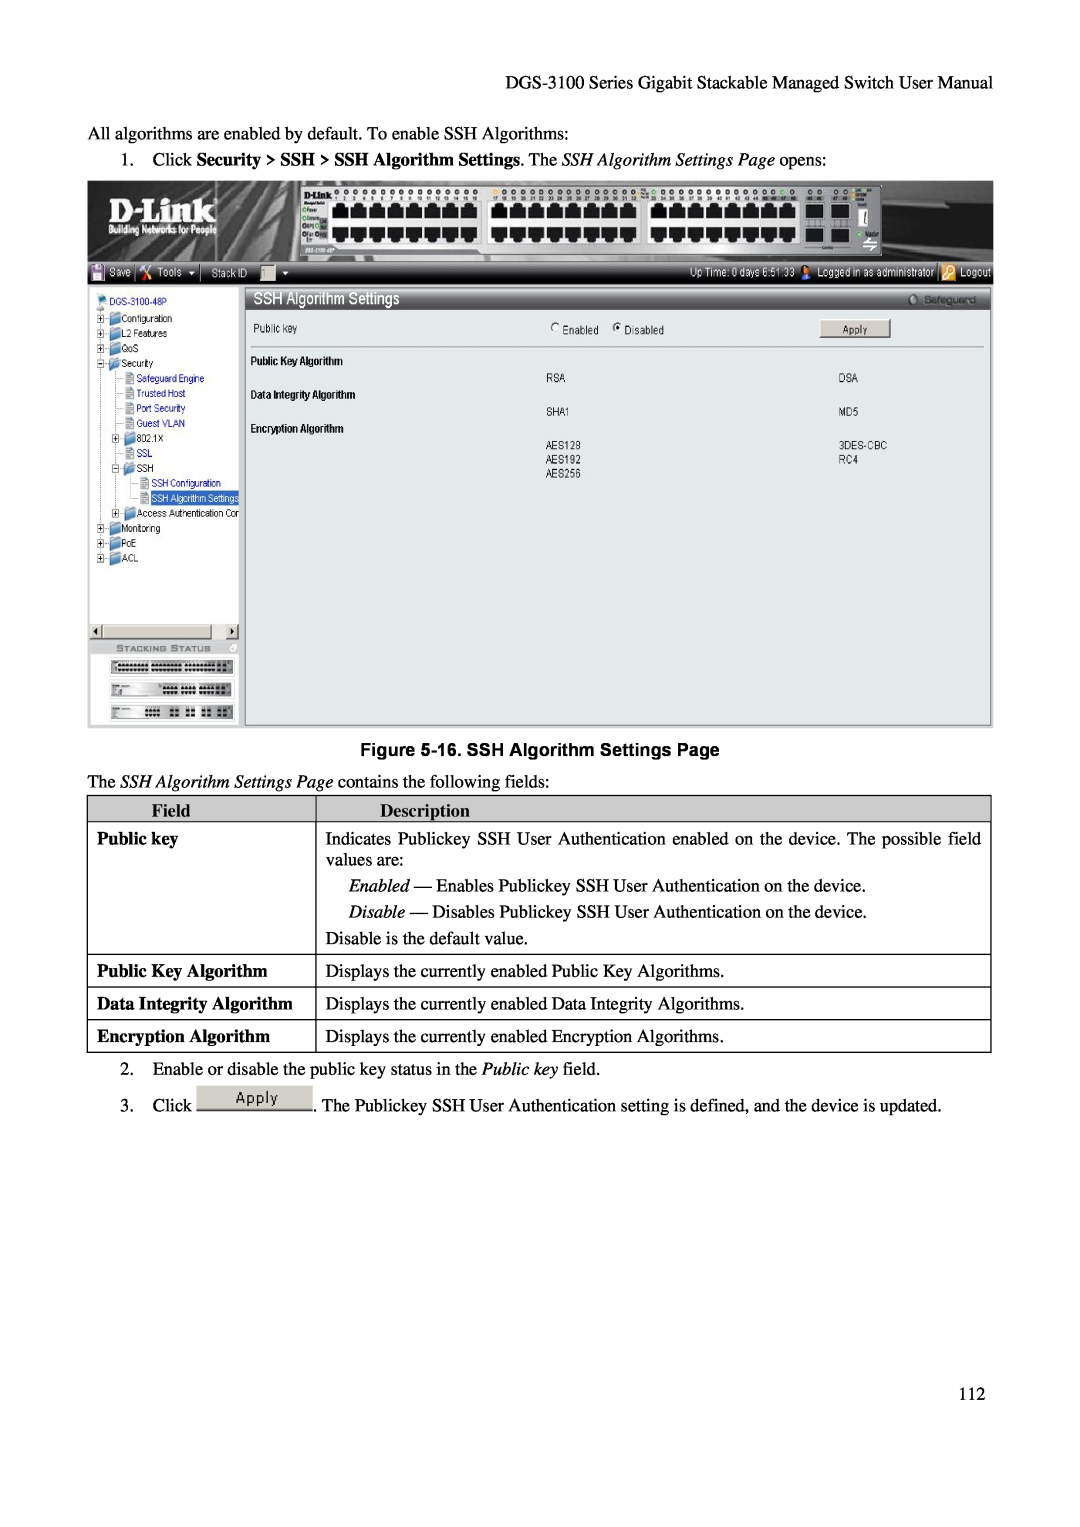 D-Link DGS-3100 user manual 16. SSH Algorithm Settings Page, Field, Description, Public key, Public Key Algorithm 